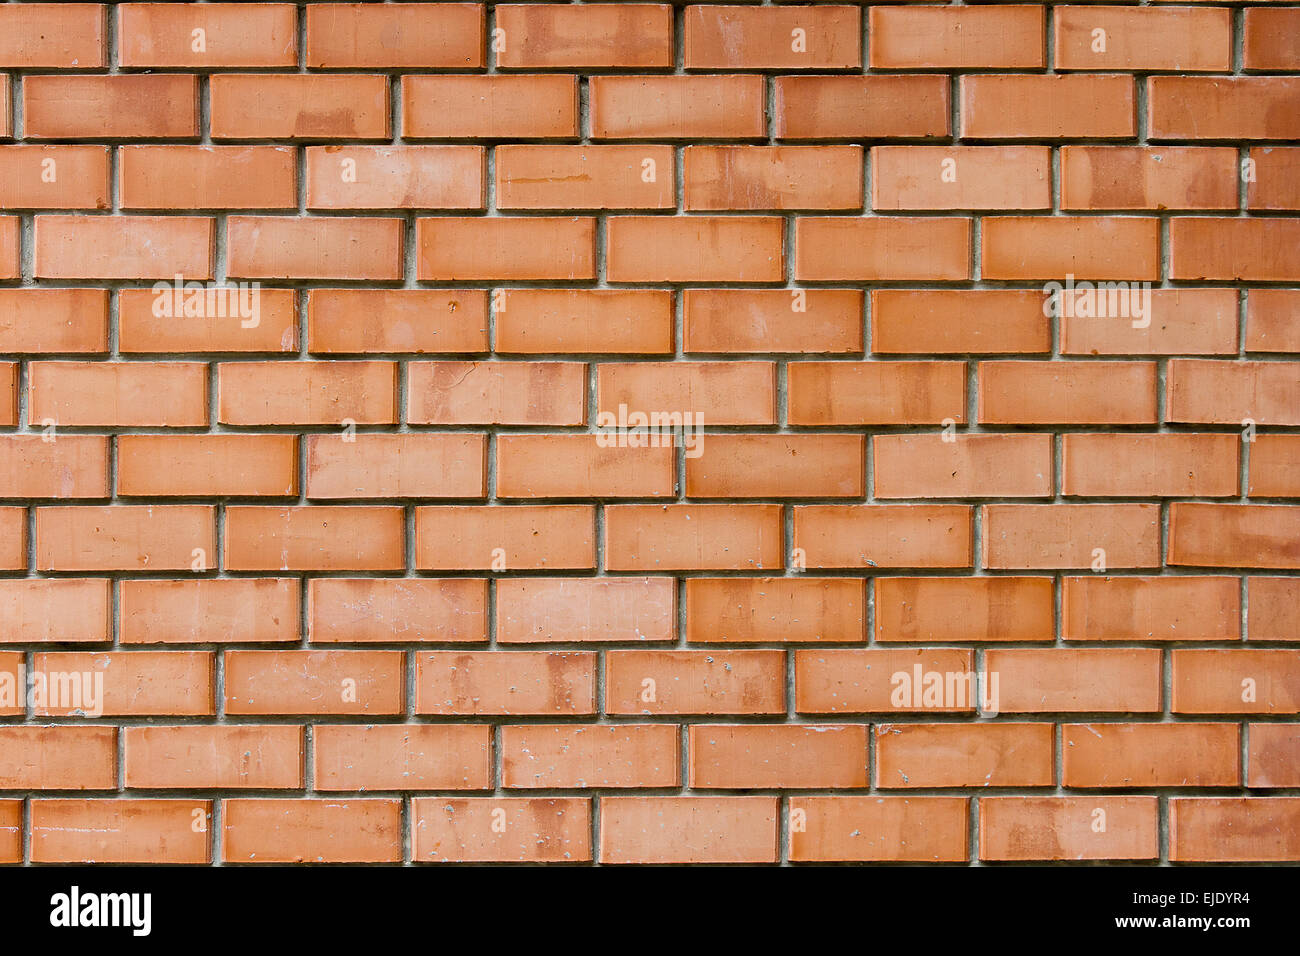 La texture du mur de brique rouge de l'image. Élément de design Banque D'Images